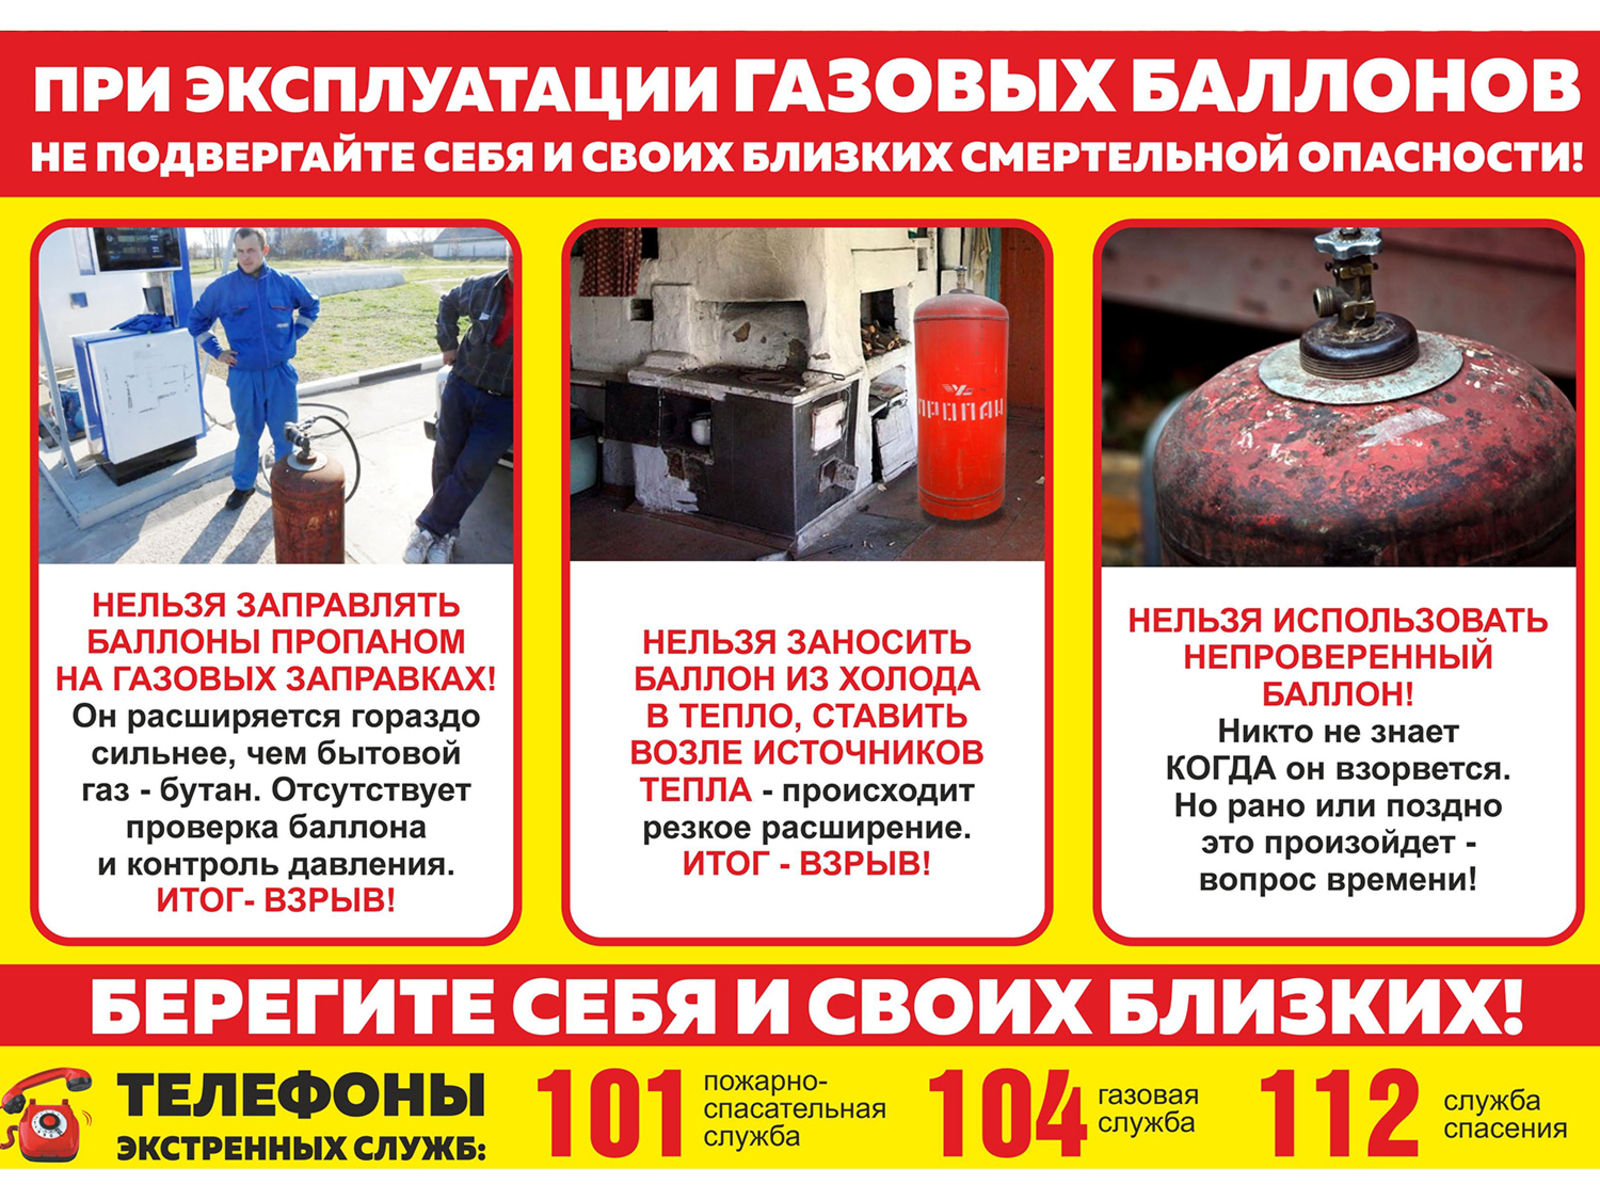 Правила пожарной безопасности при пользовании бытовыми газовыми приборами